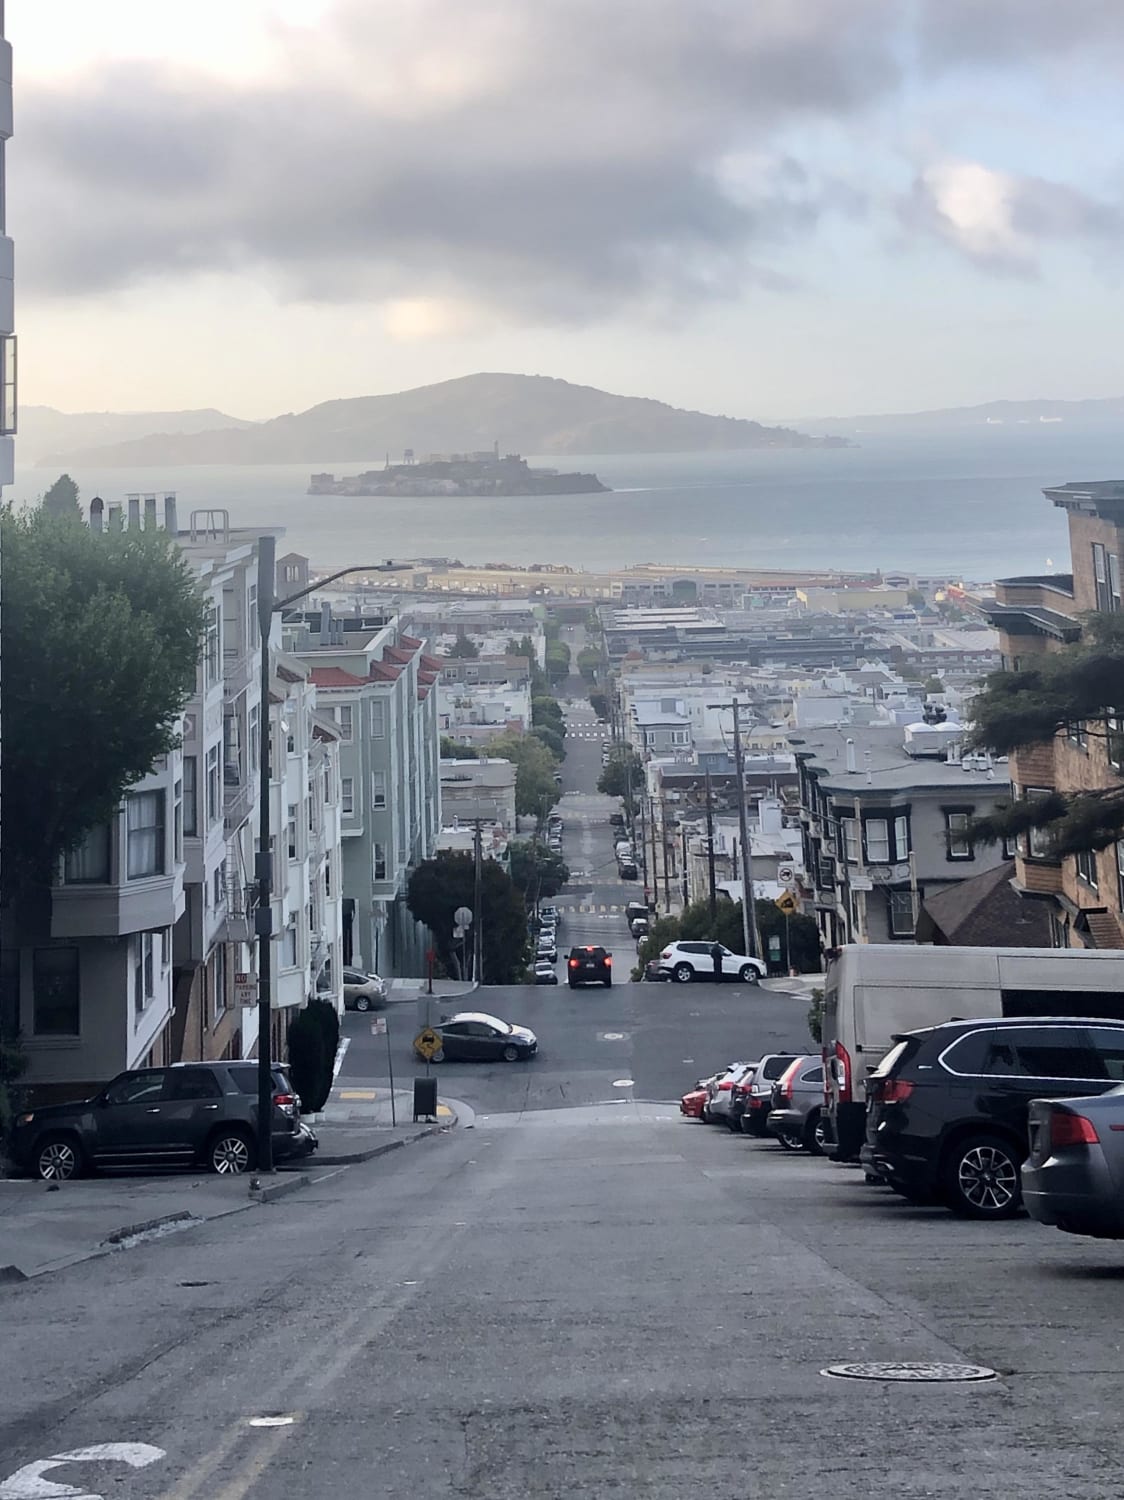 San Francisco CA (Alcatraz Island at a distance)